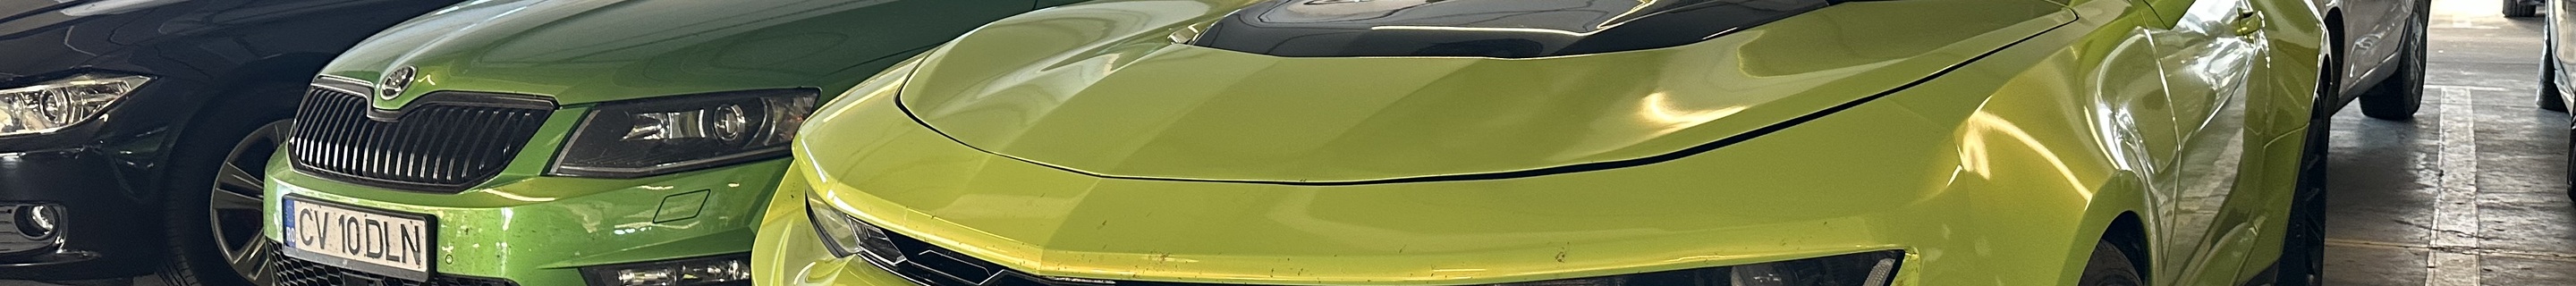 Chevrolet Camaro ZL1 Convertible 2017